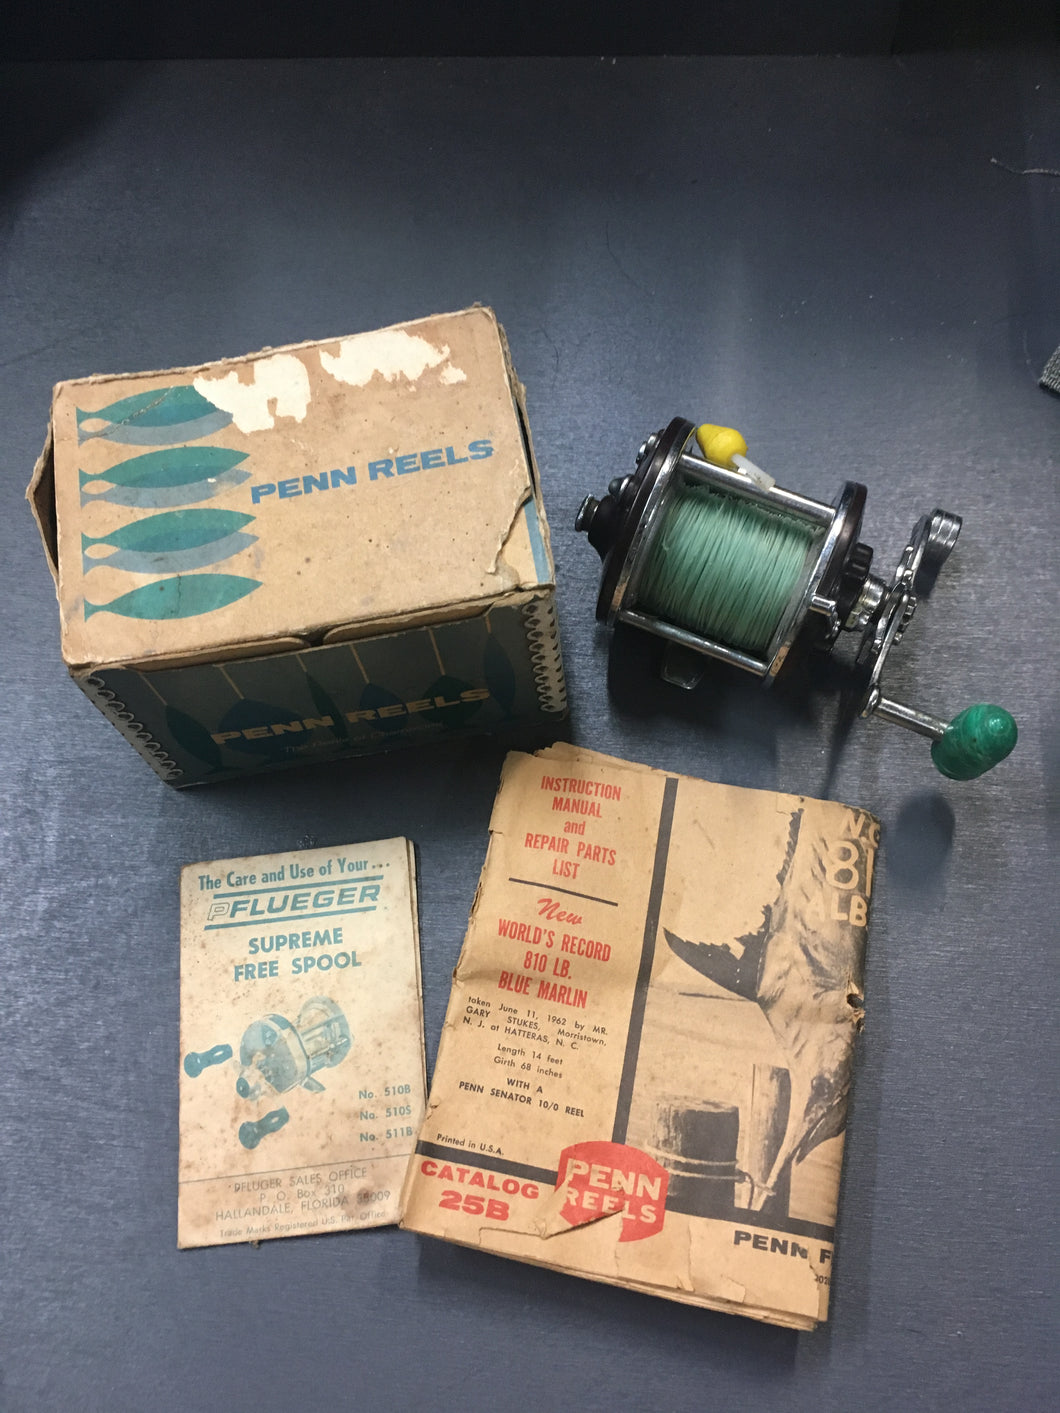 Vintage Brown Penn Reels Collectable (original) Penn Peerless No 9 Fishing Reel/In Box with Manuals